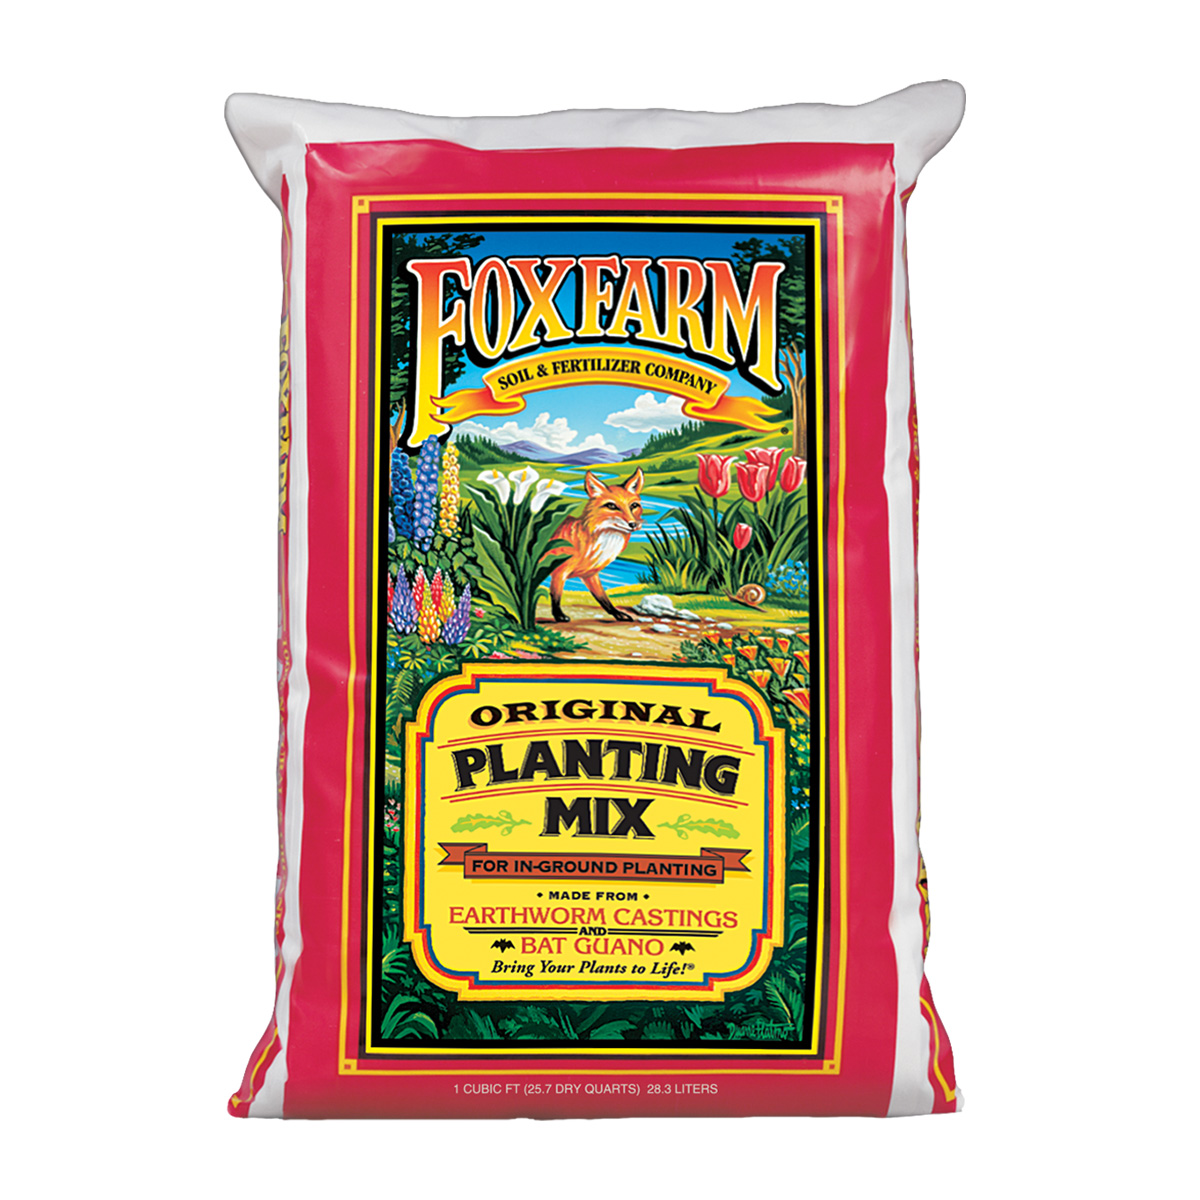 Foxfarm Original Planting Mix